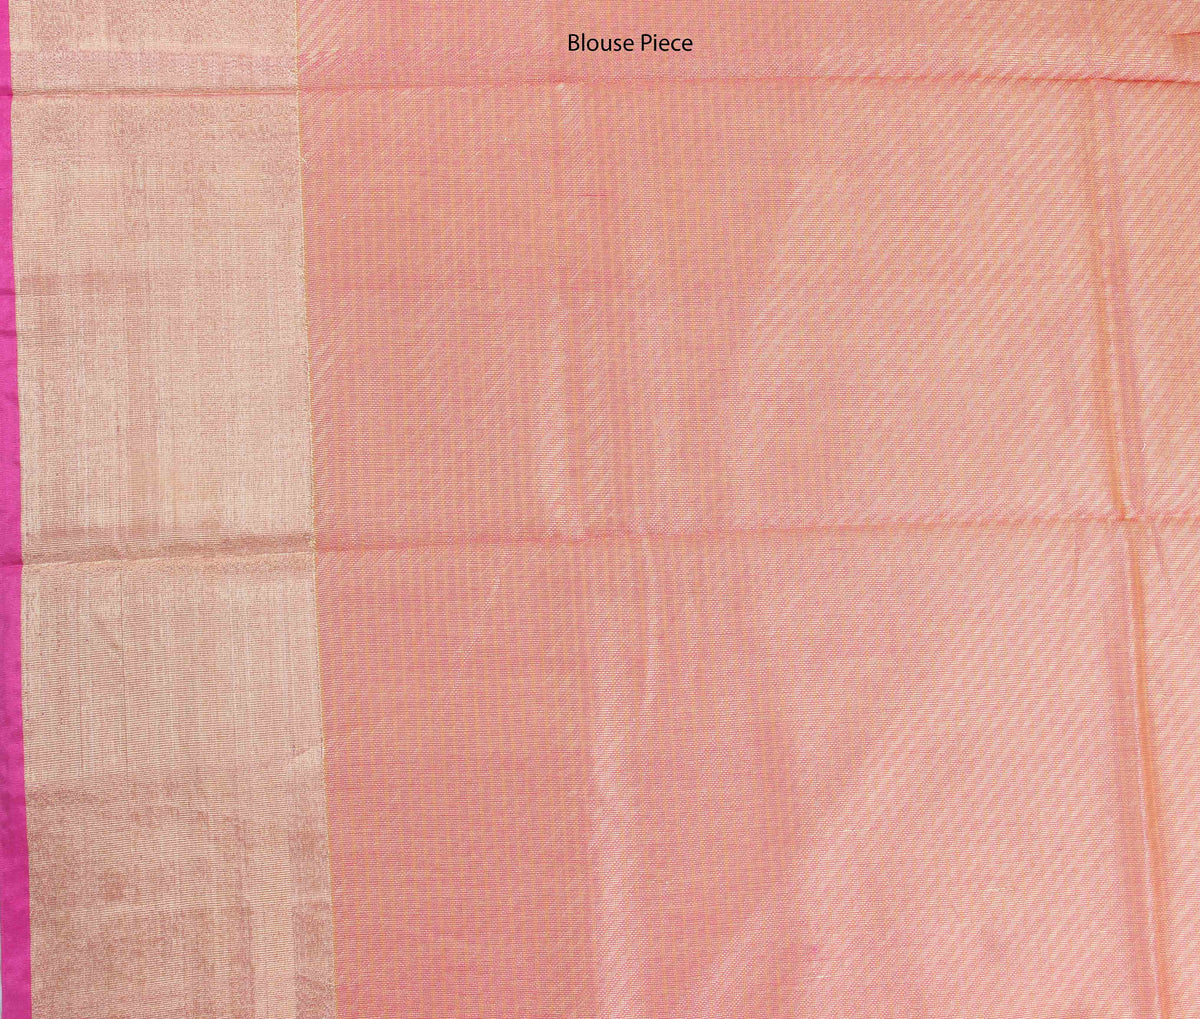 Salmon Cotton Banarasi saree with self stripes (4) blouse